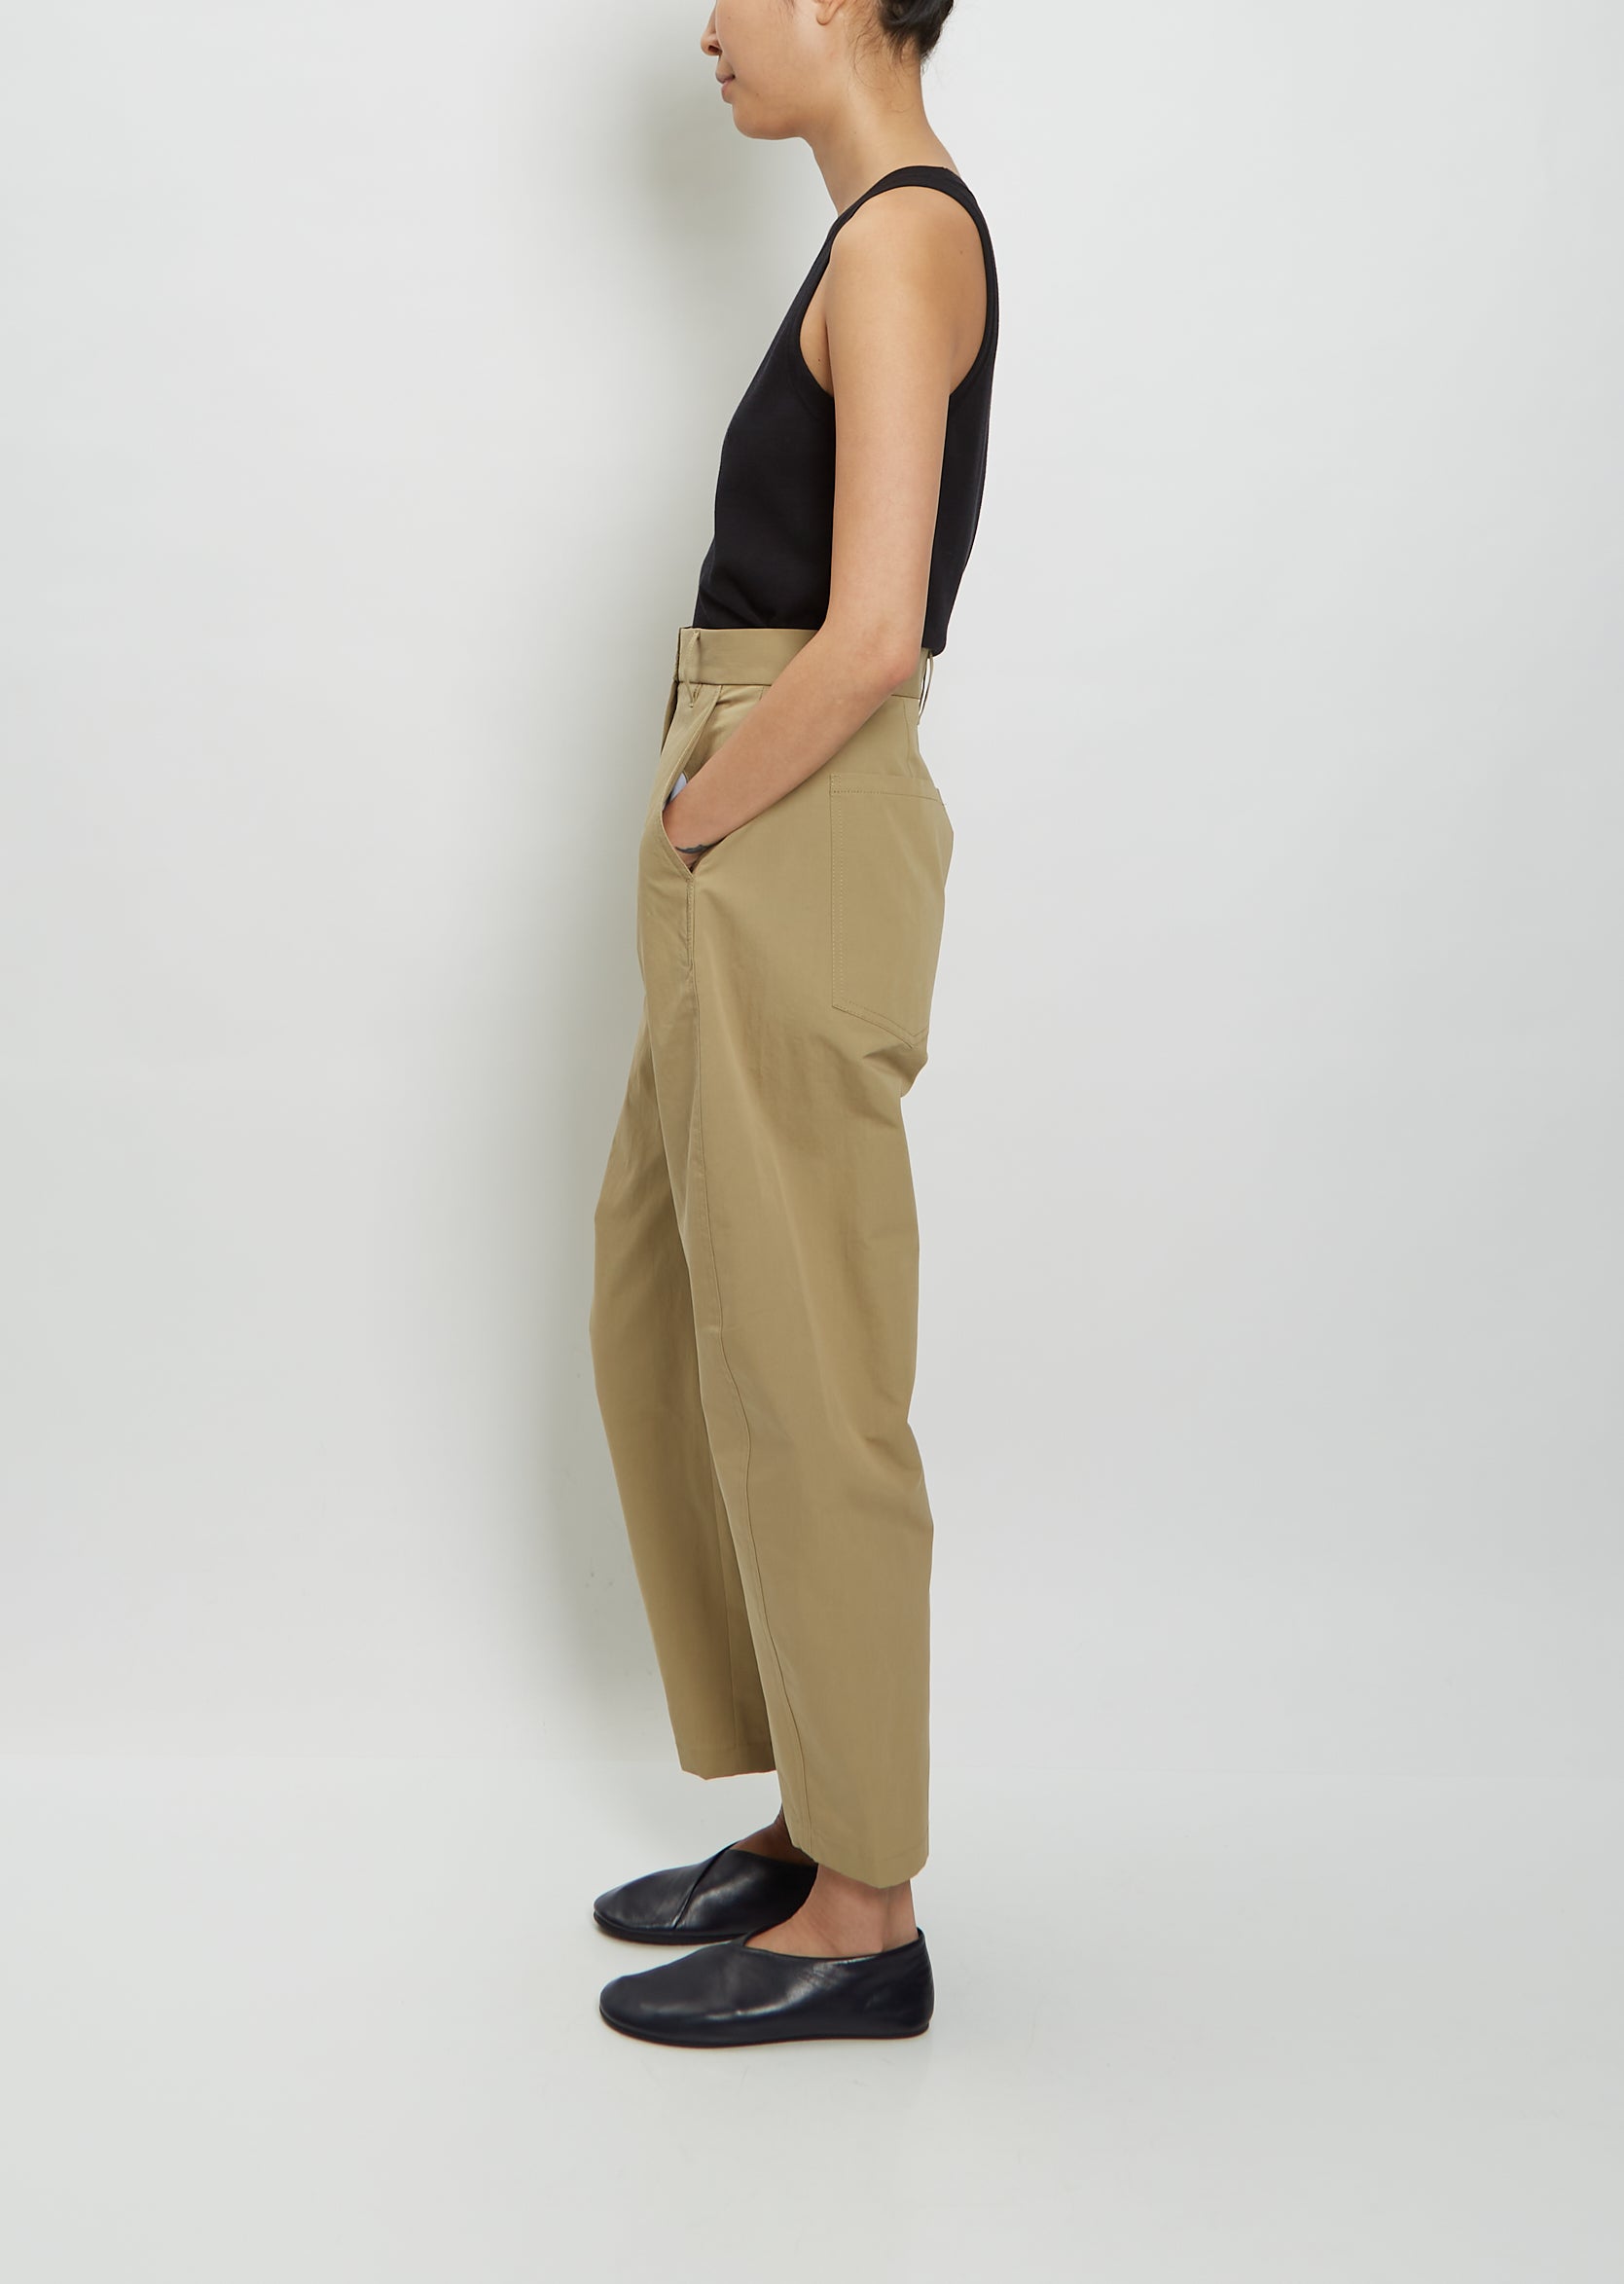 Le Suit Women's Belted Safari Jacket Pantsuit, Regular & Petite Sizes -  Macy's